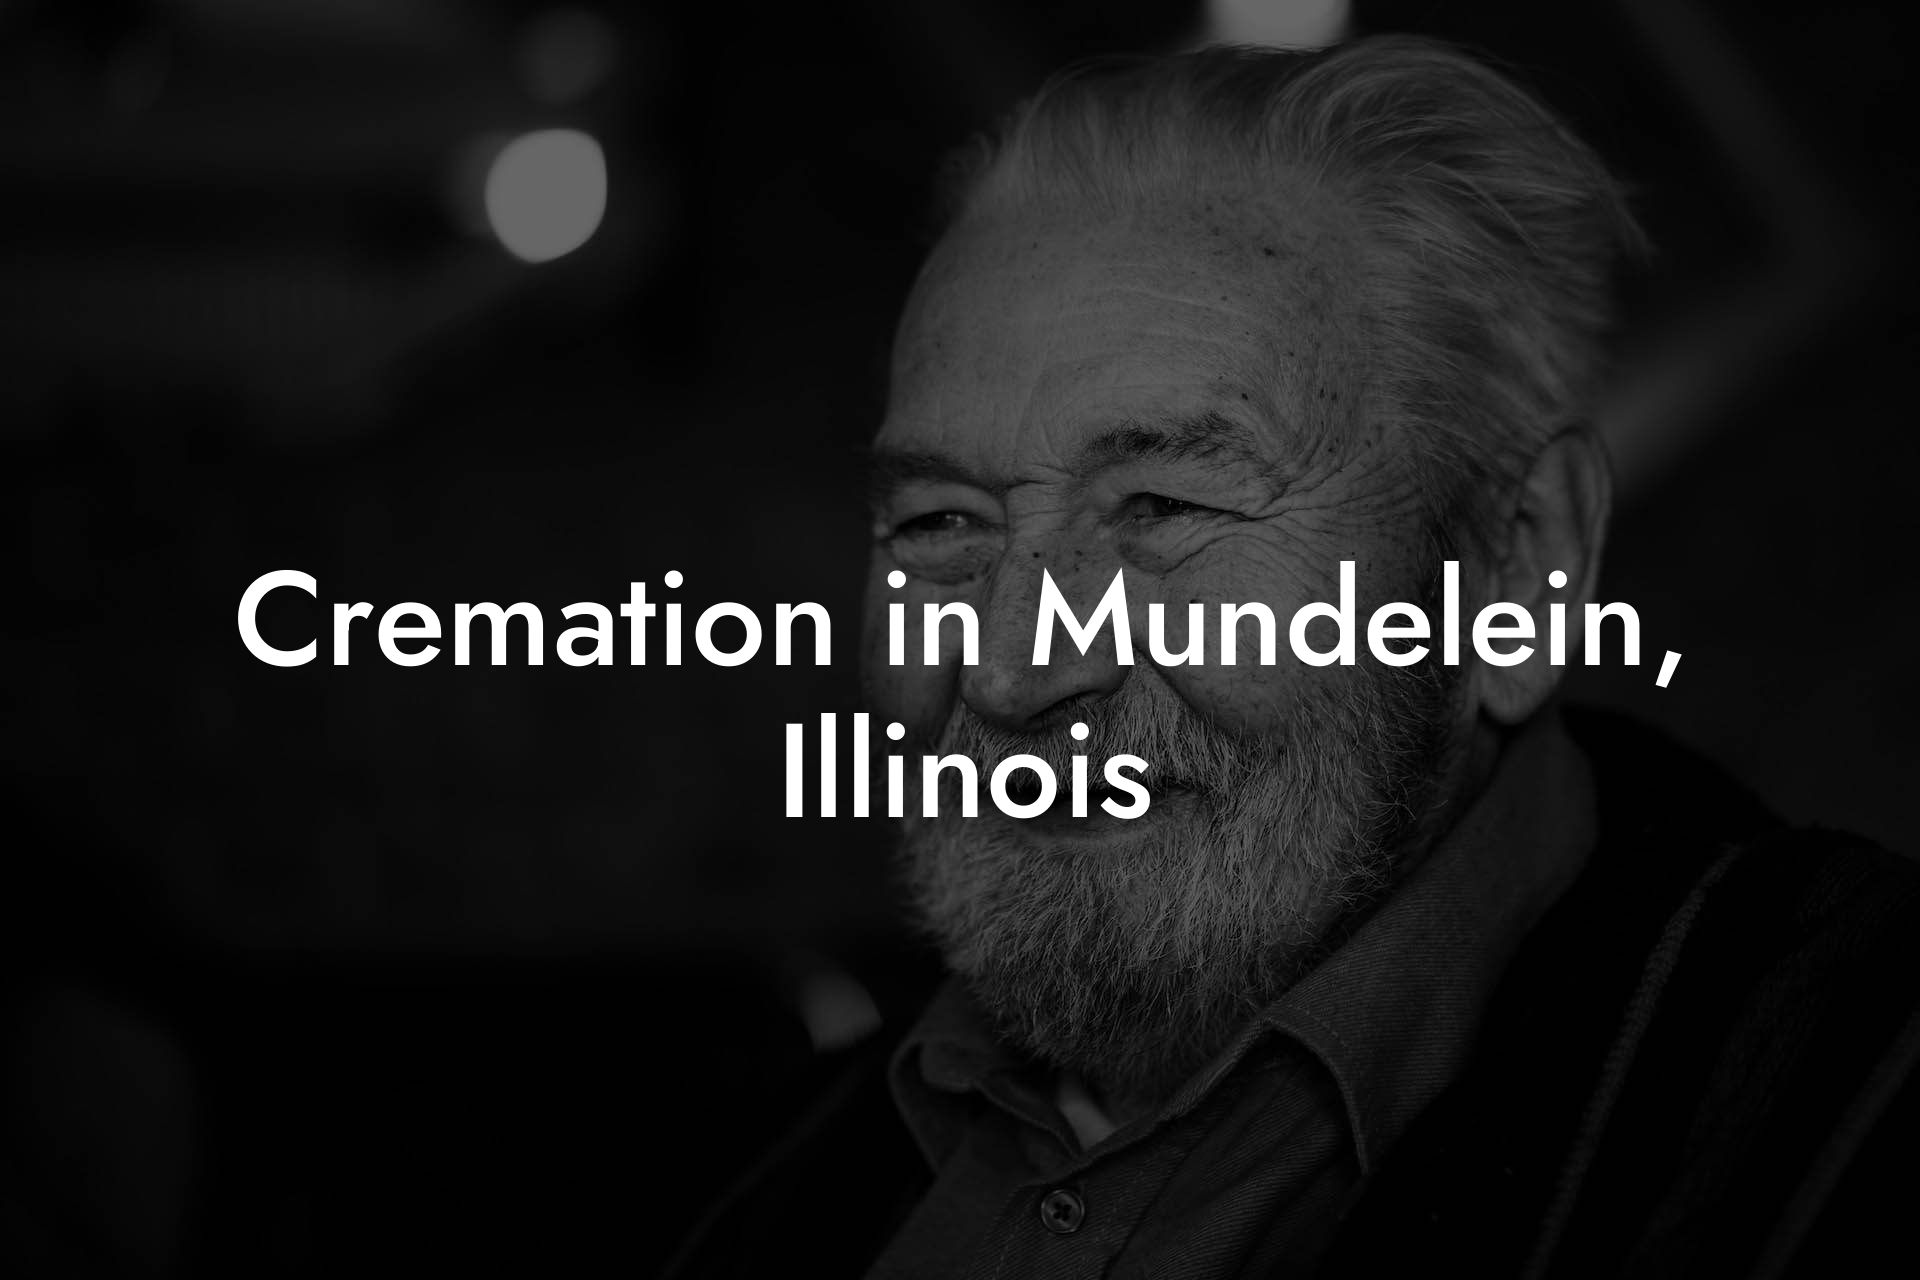 Cremation in Mundelein, Illinois